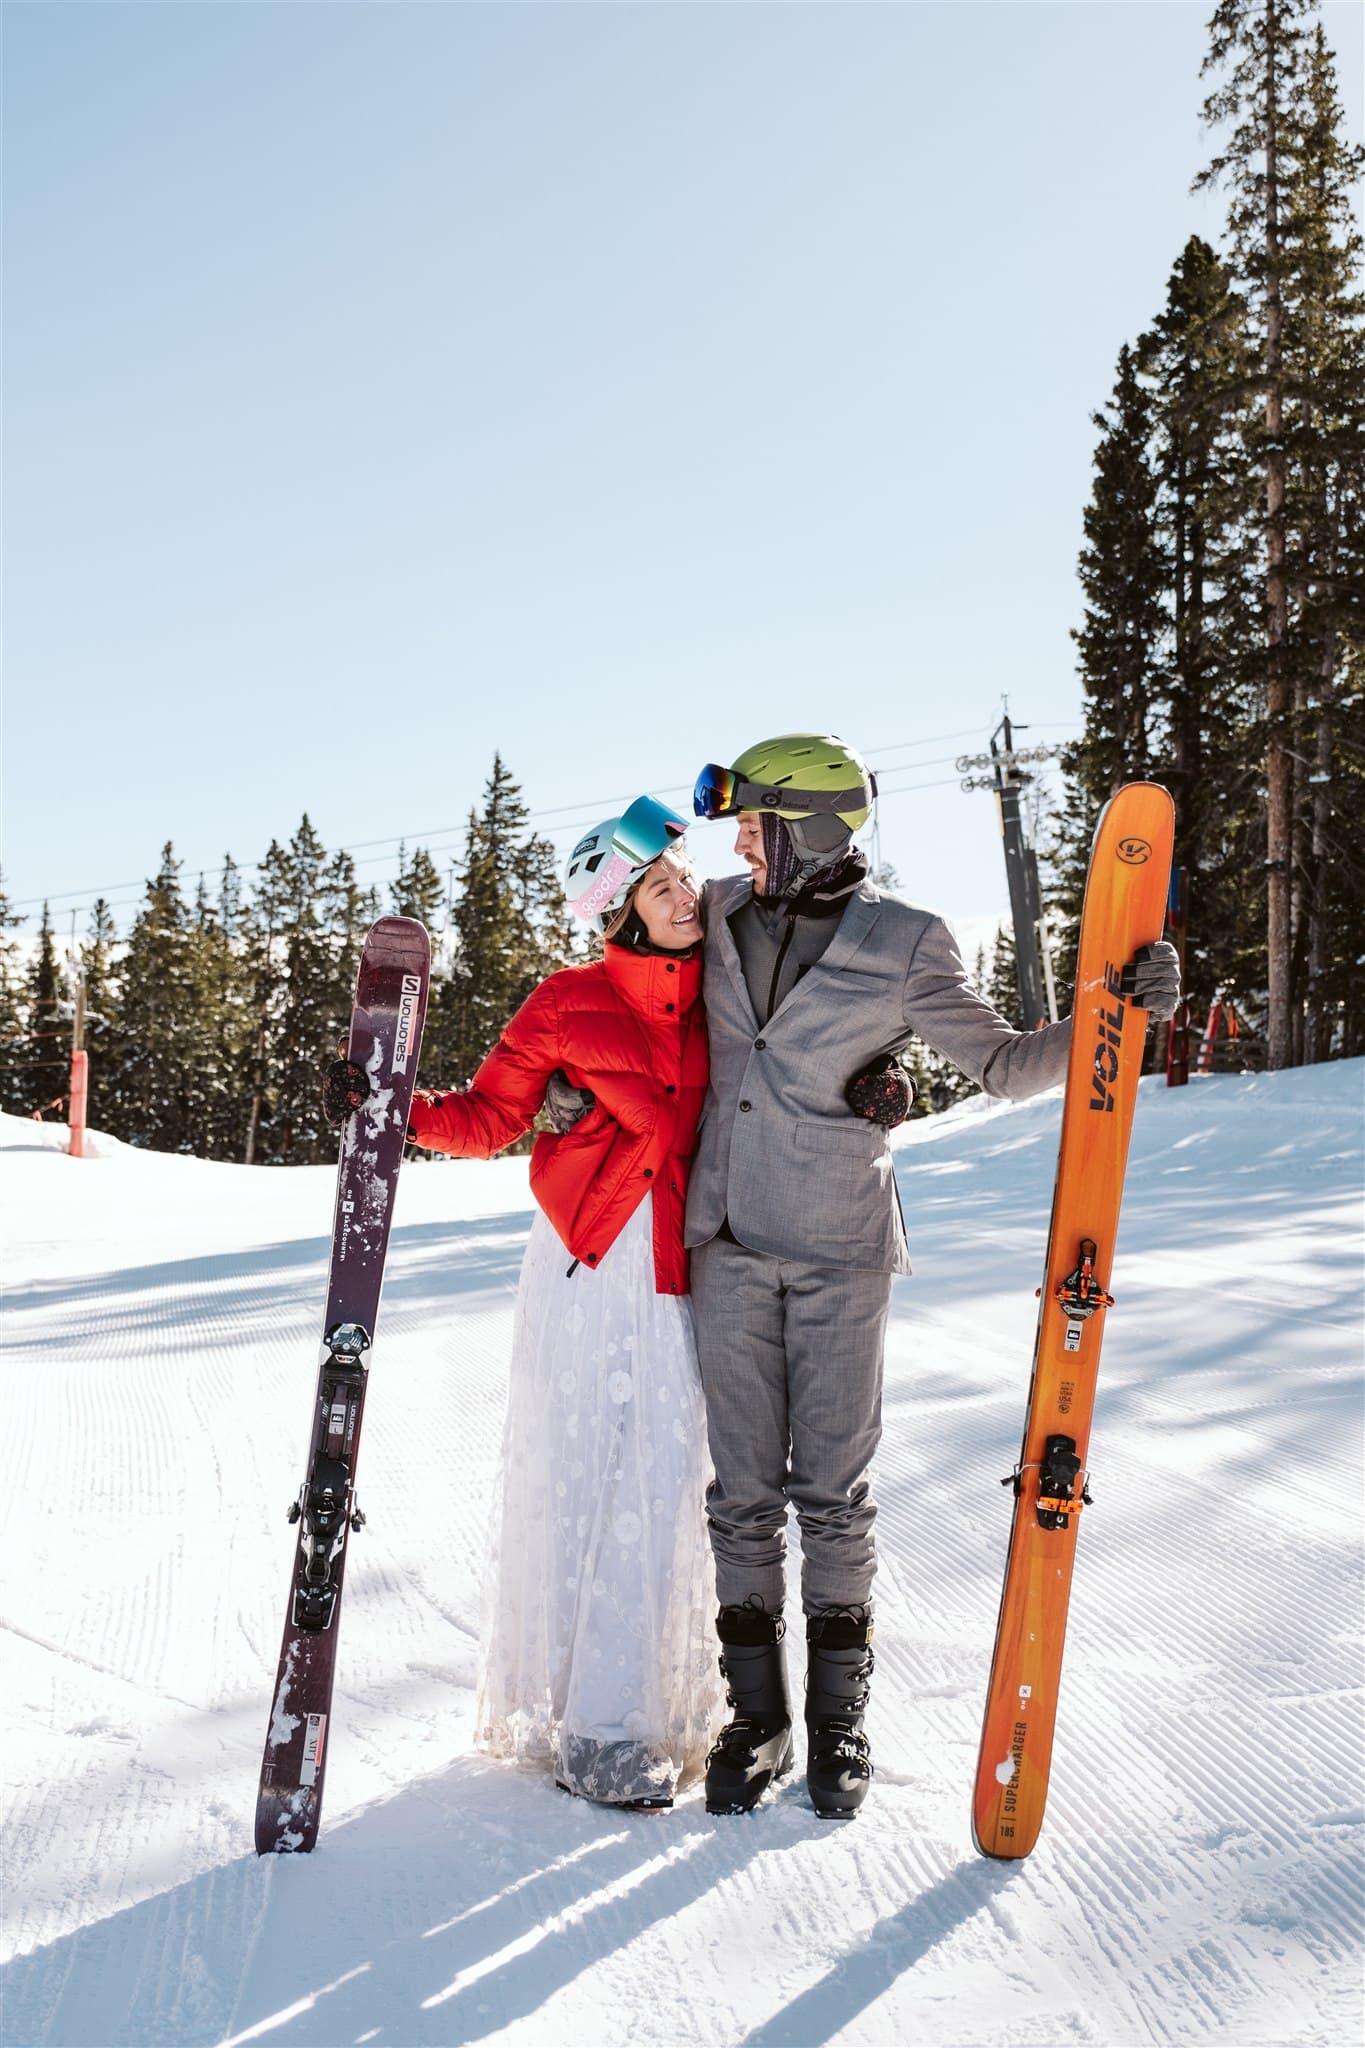 Skiing elopement at Ski Cooper in Colorado